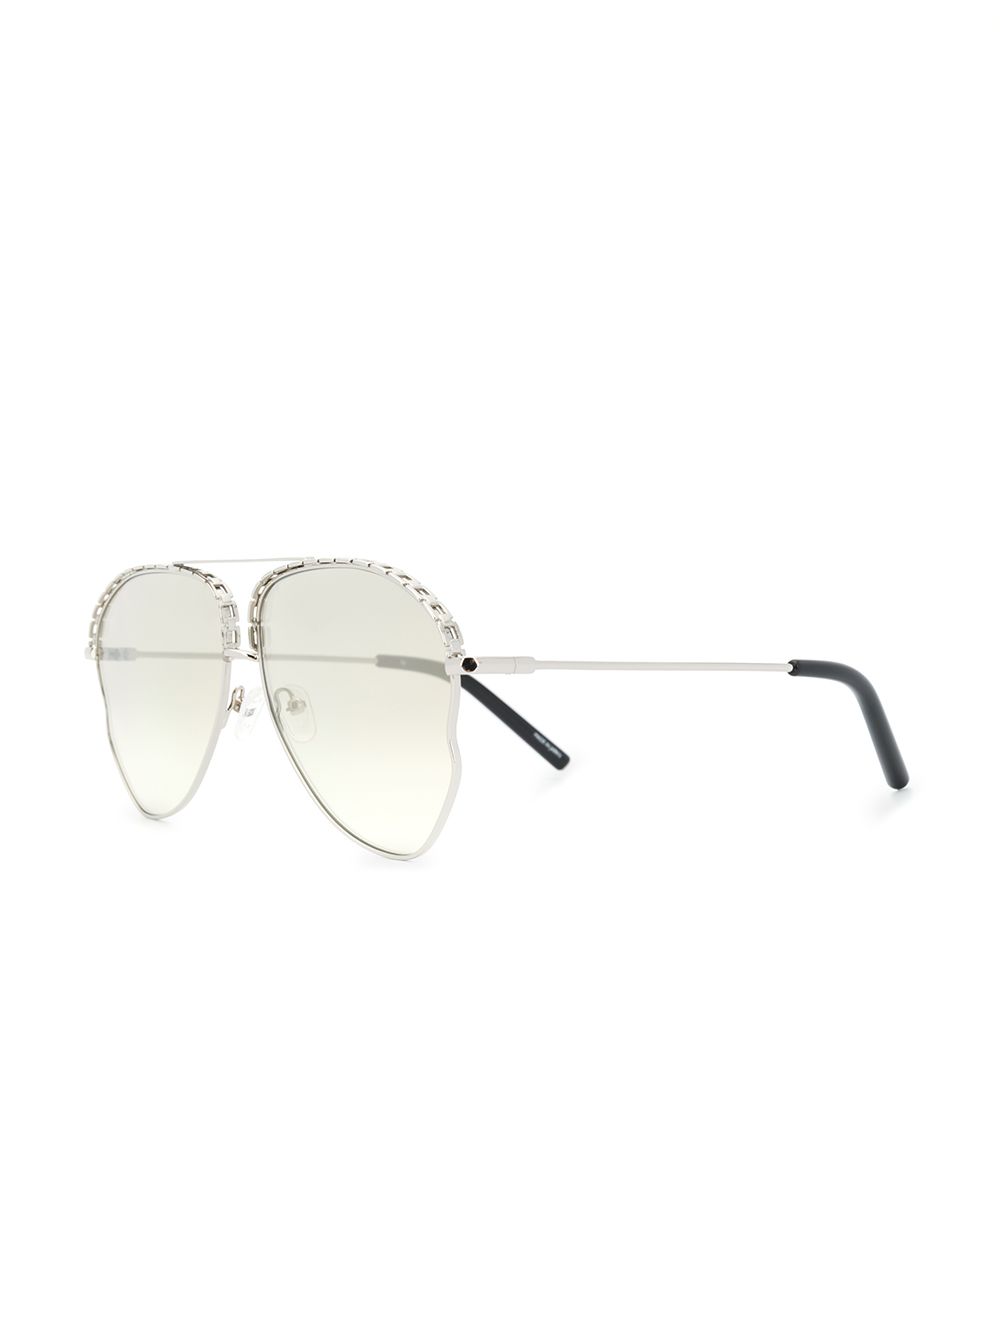 фото Matthew williamson декорированные солнцезащитные очки-авиаторы